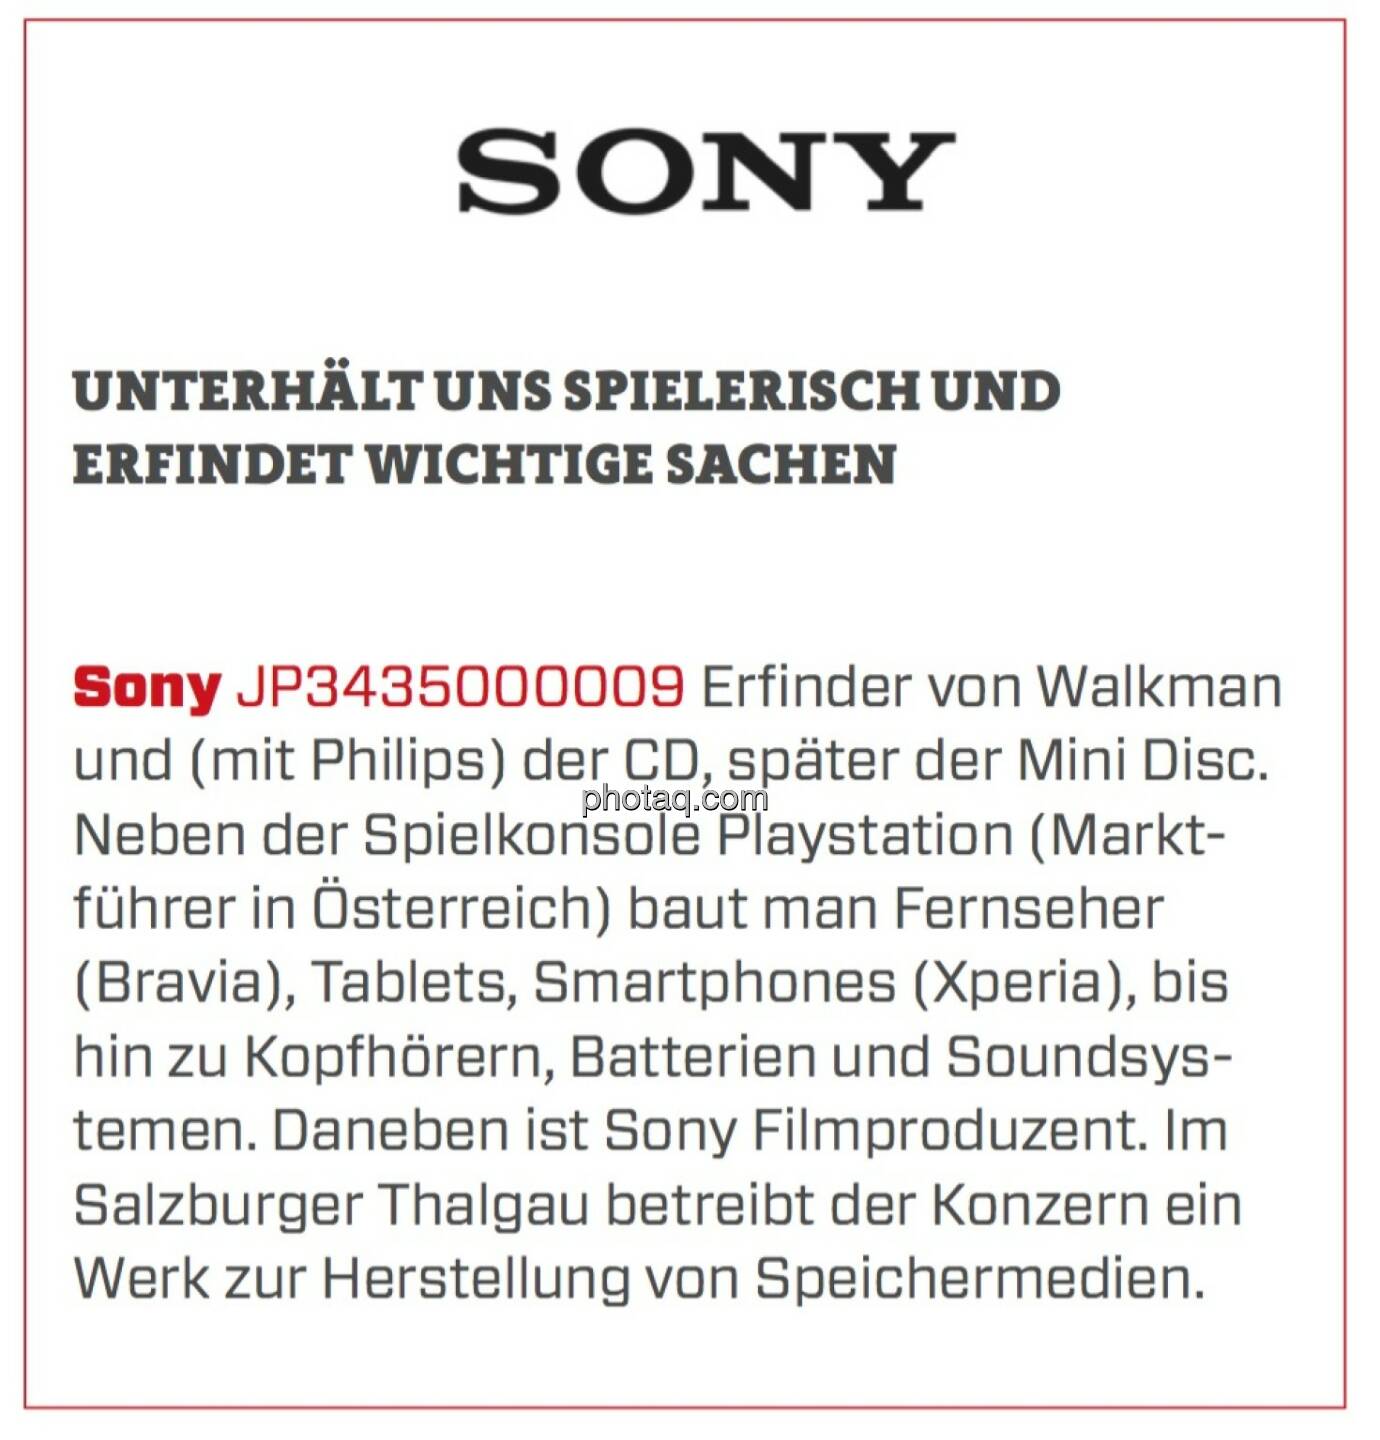 Sony - Unterhält uns spielerisch und erfindet wichtige Sachen: Erfinder von Walkman und (mit Philips) der CD, später der Mini Disc. Neben der Spielkonsole Playstation (Marktführer in Österreich) baut man Fernseher (Bravia), Tablets, Smartphones (Xperia), bis hin zu Kopfhörern, Batterien und Soundsystemen. Daneben ist Sony Filmproduzent. Im Salzburger Thalgau betreibt der Konzern ein Werk zur Herstellung von Speichermedien.